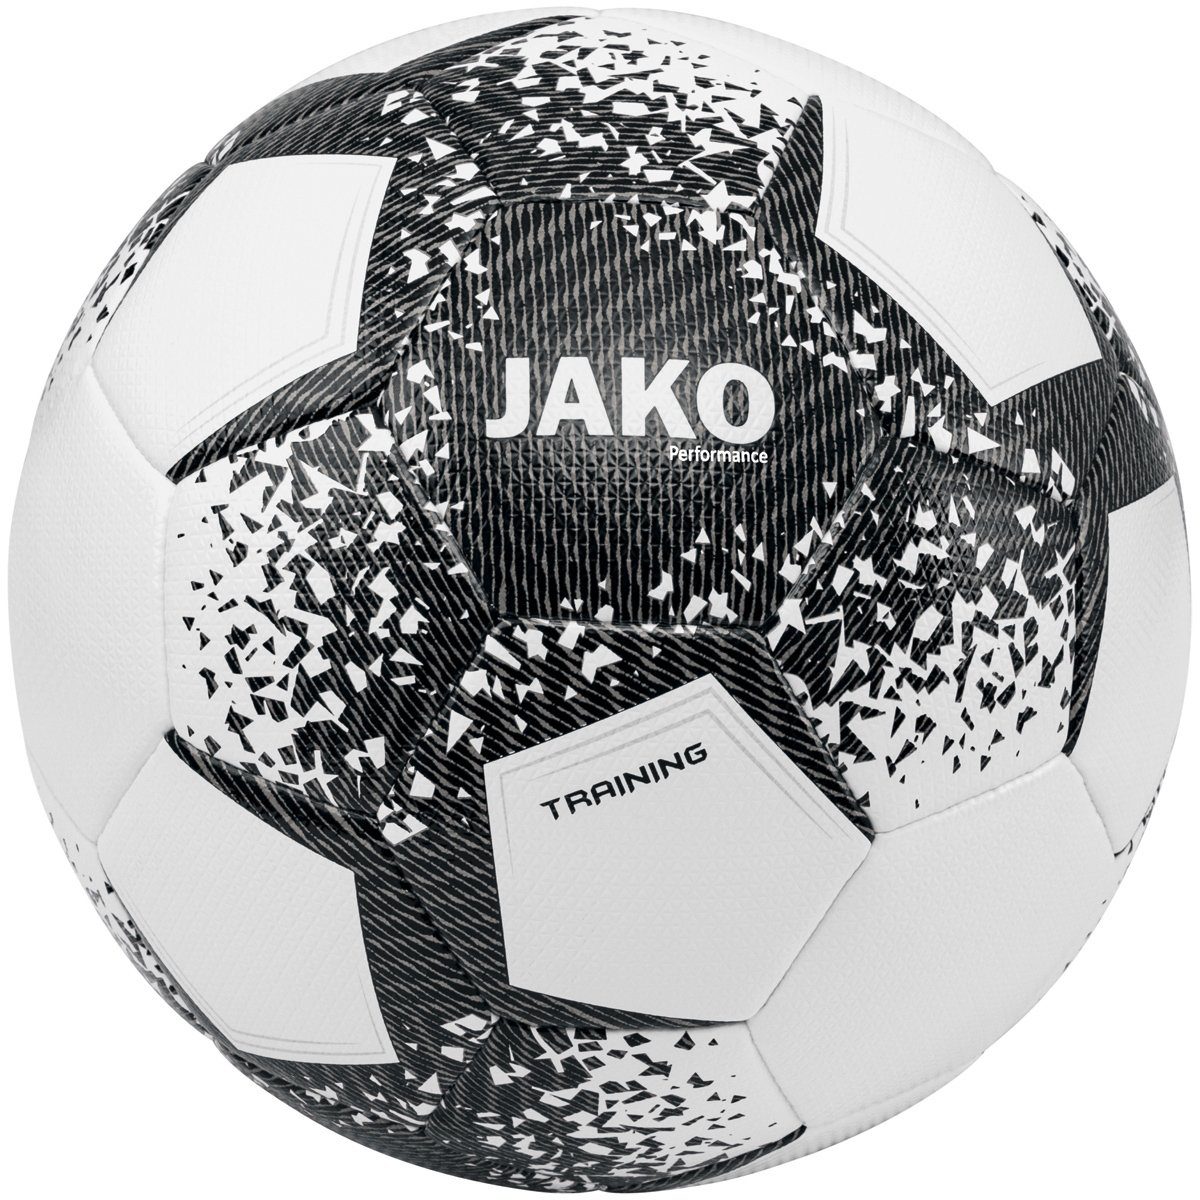 (Ganzjahresartikel) Fußball 2301 Performance Trainingsball Jako weiss/schwarz/steingrau Ball -